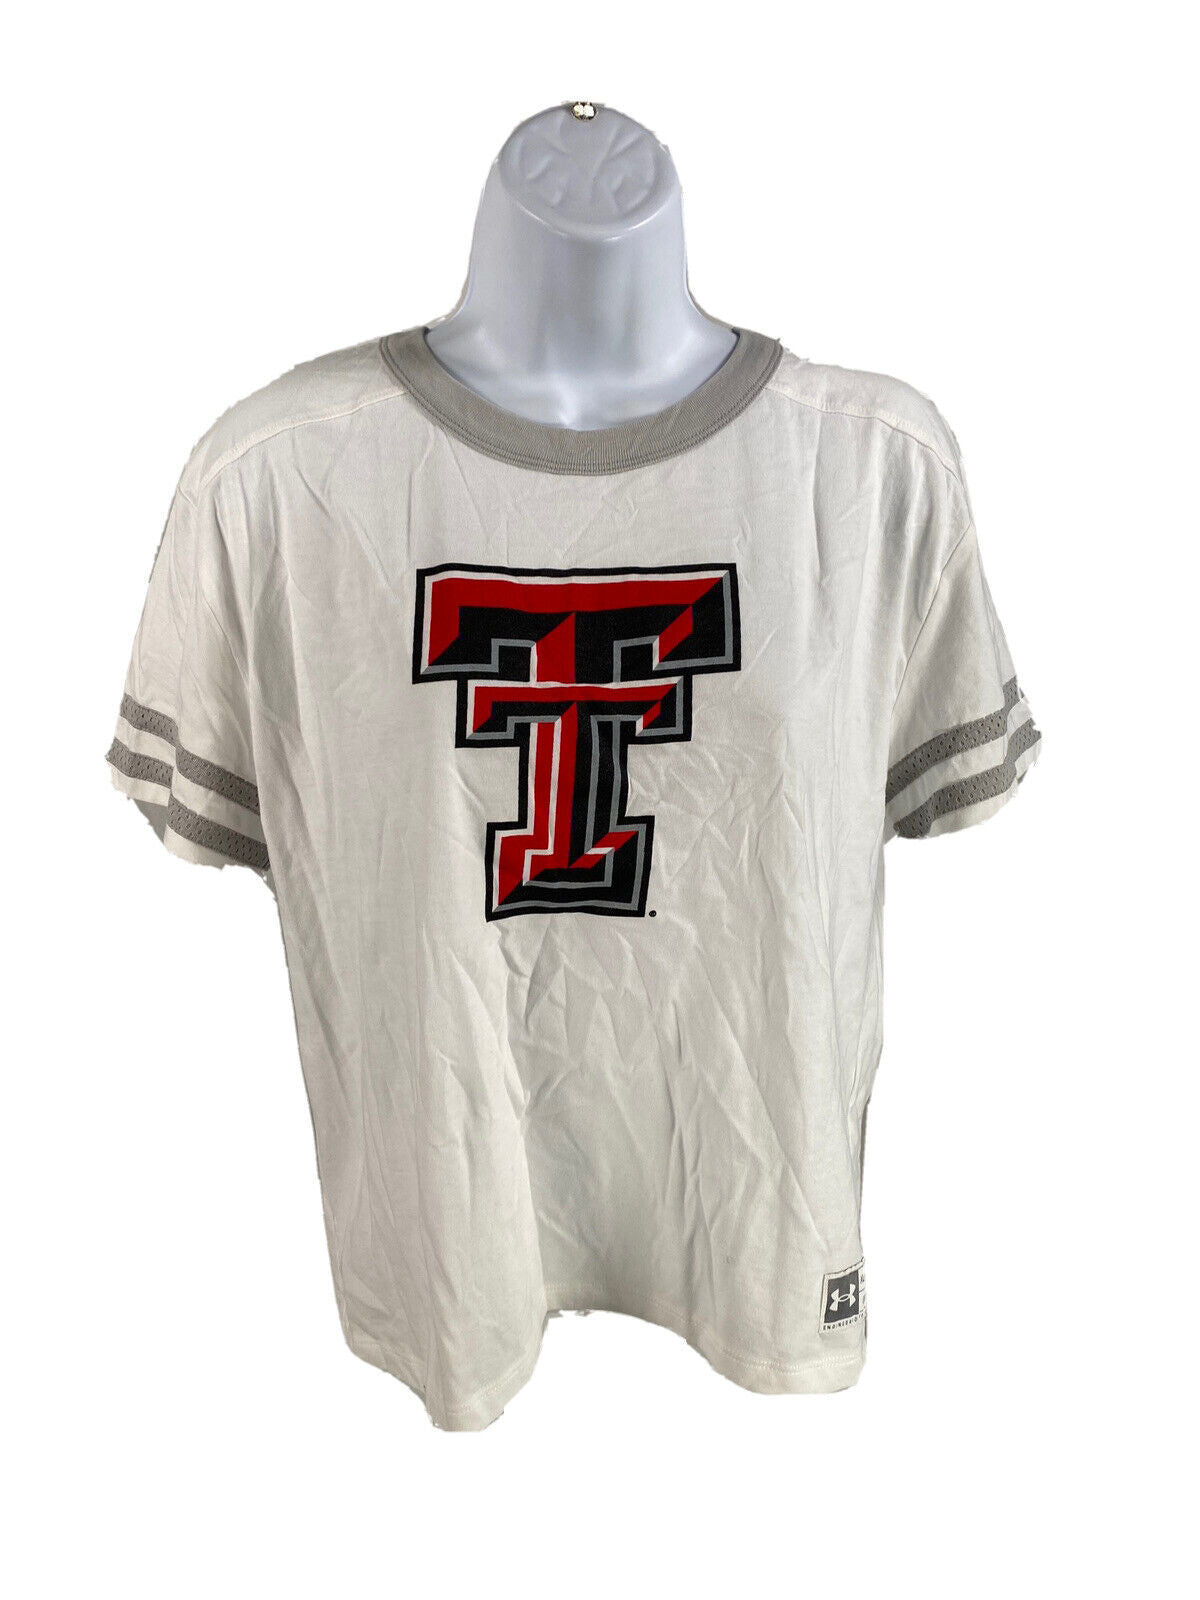 NUEVA camiseta recortada blanca Texas Tech de Under Armour para mujer - M